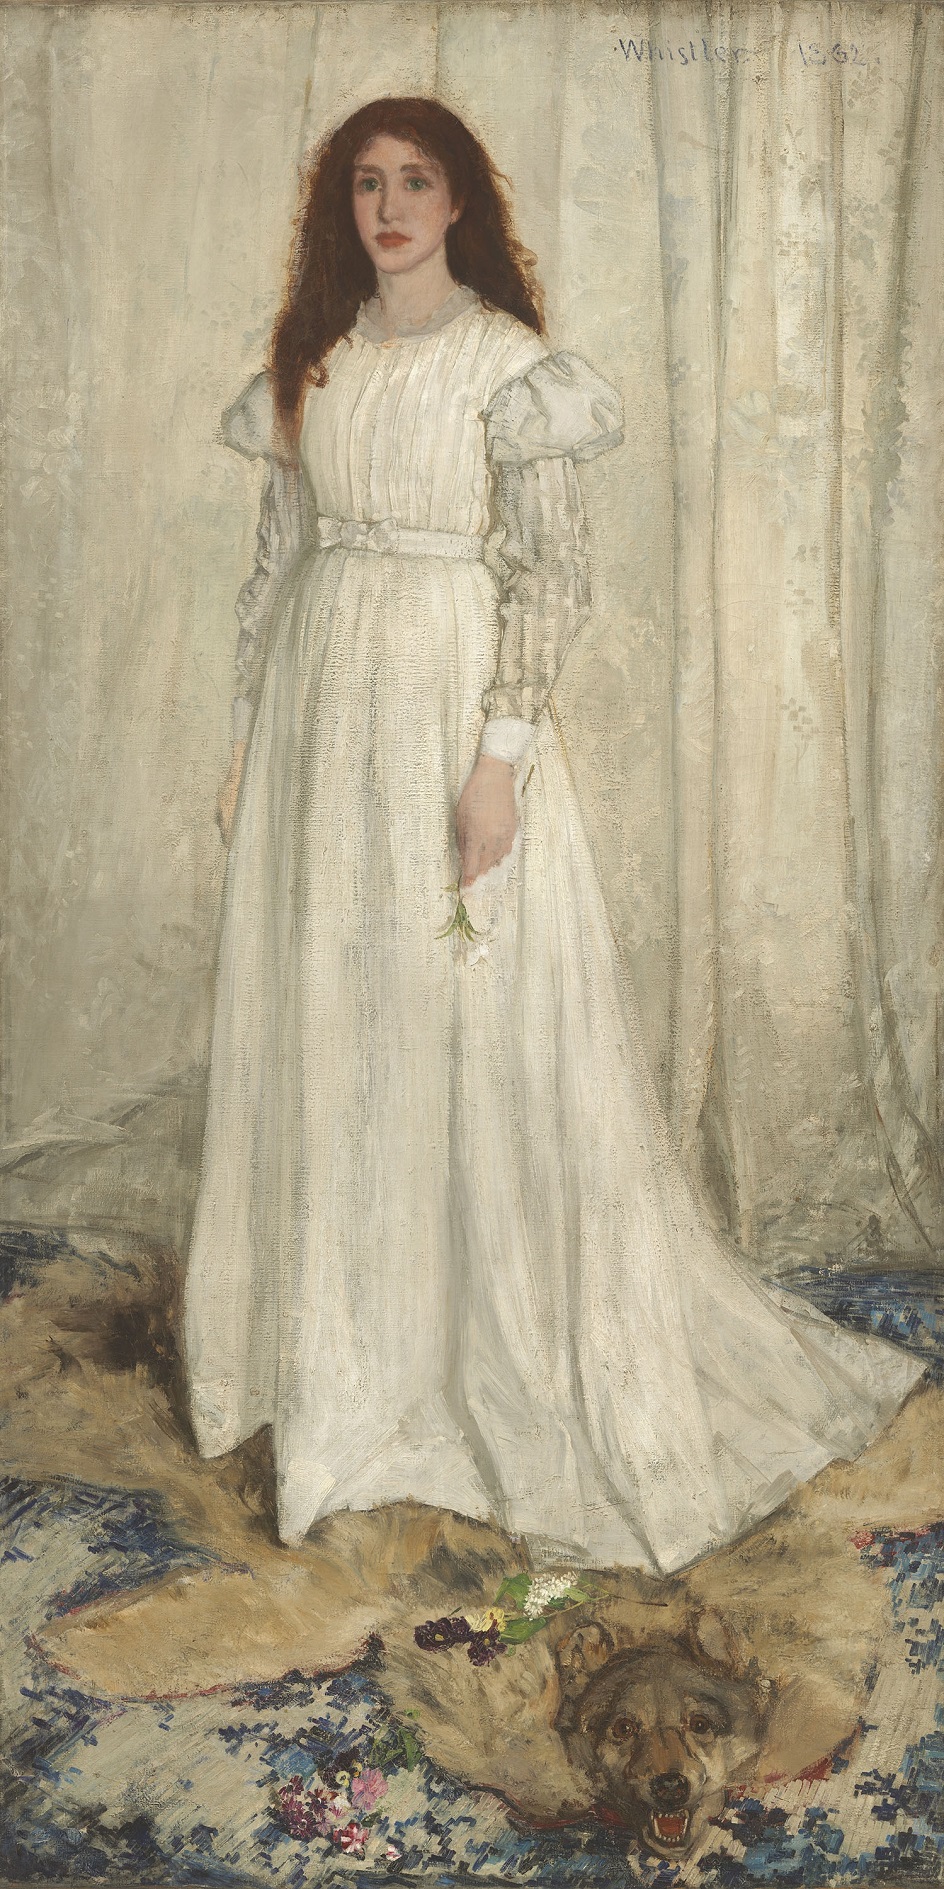 Джеймс Уистлер. Картина «Симфония в белом № 1. Девушка в белом», 1862